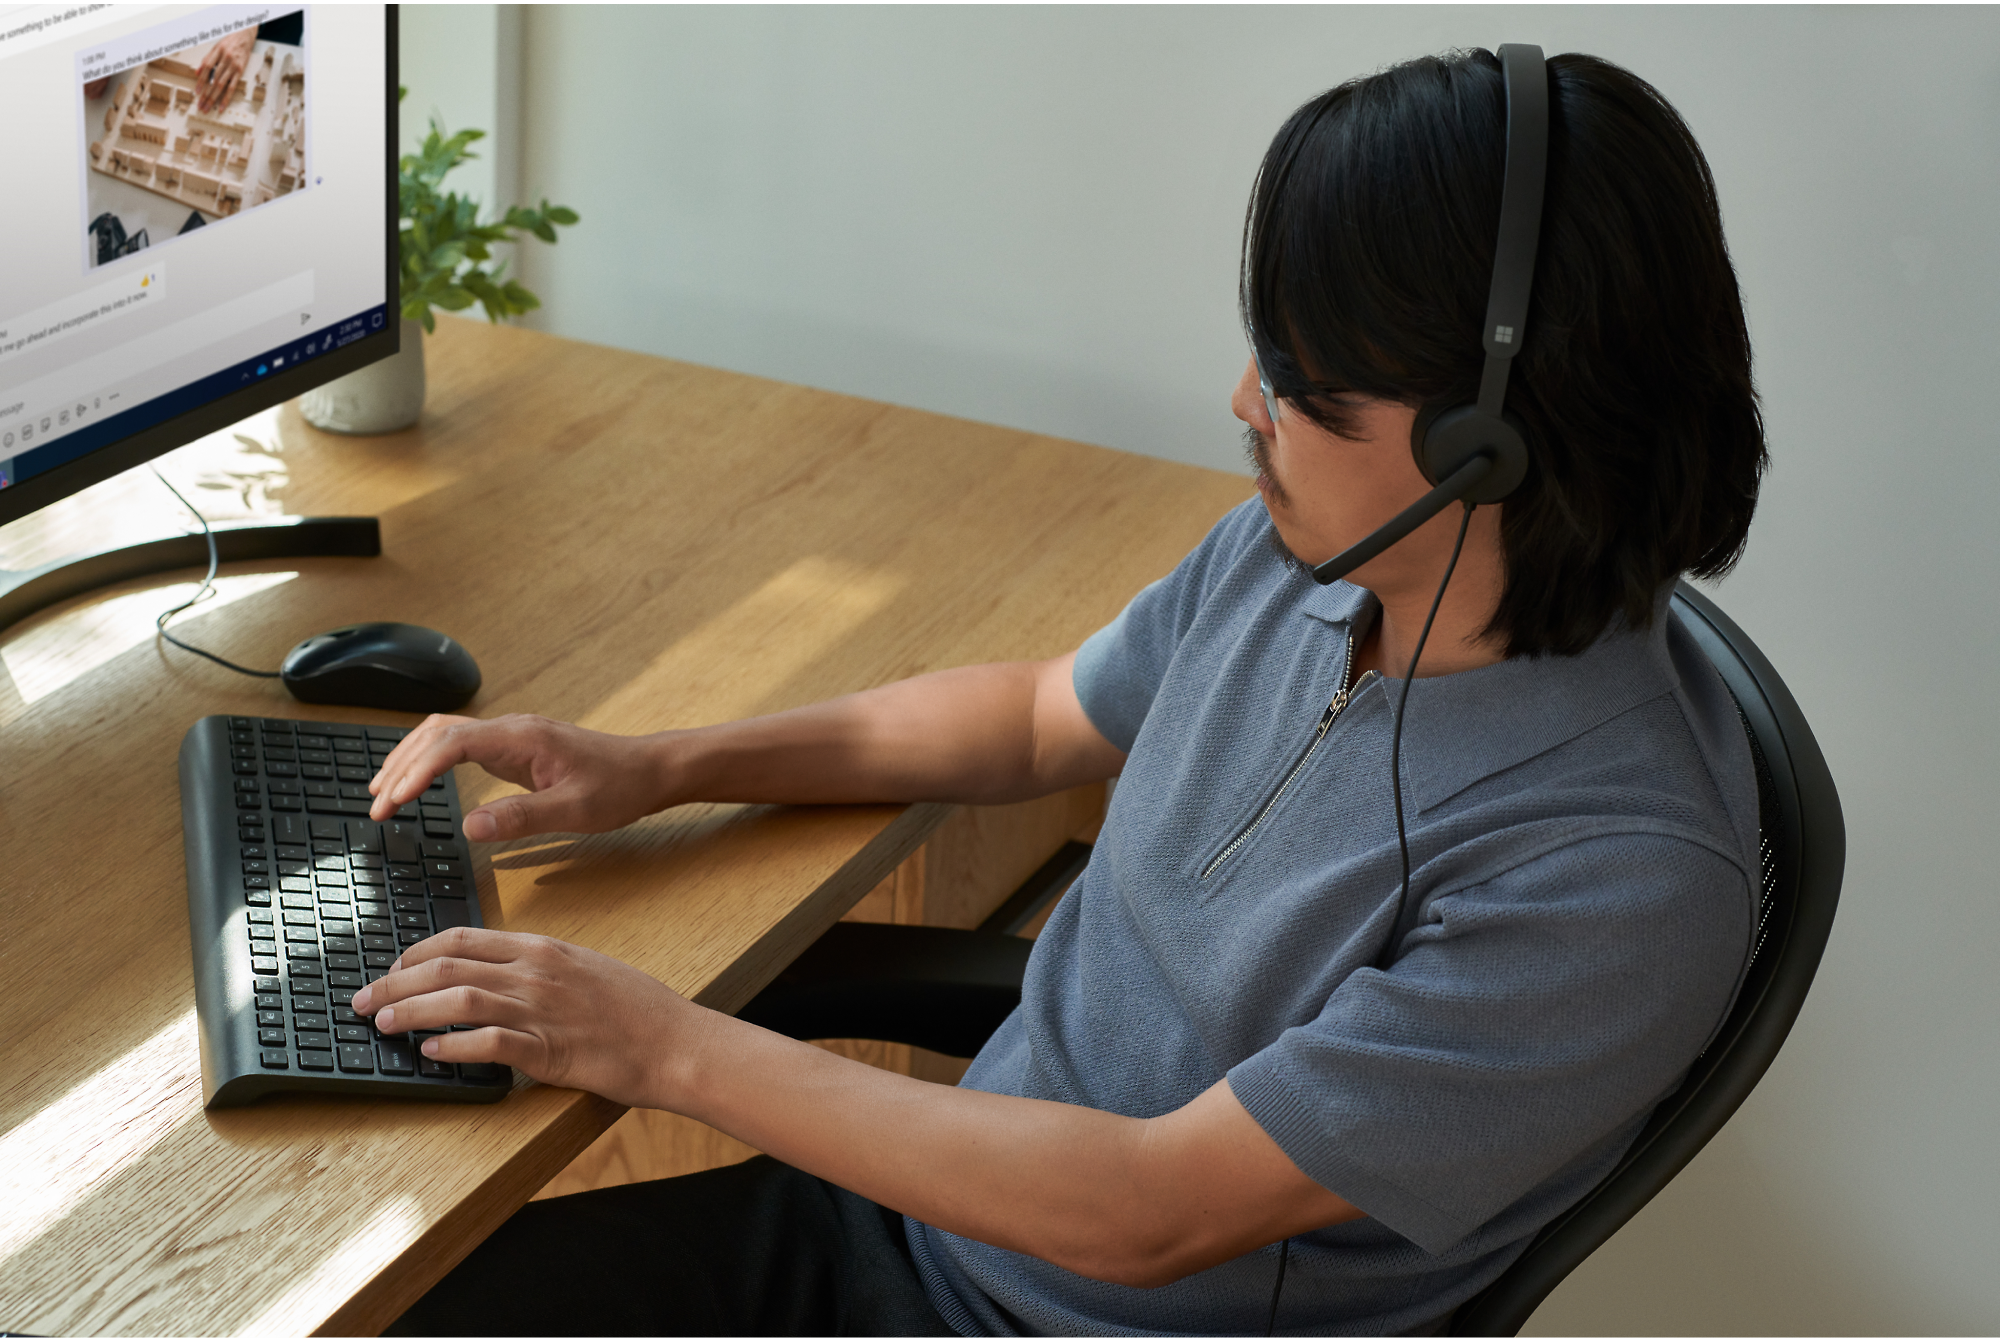 Persona che indossa le cuffie seduta a una scrivania, scrive su una tastiera e guarda il monitor di un computer.